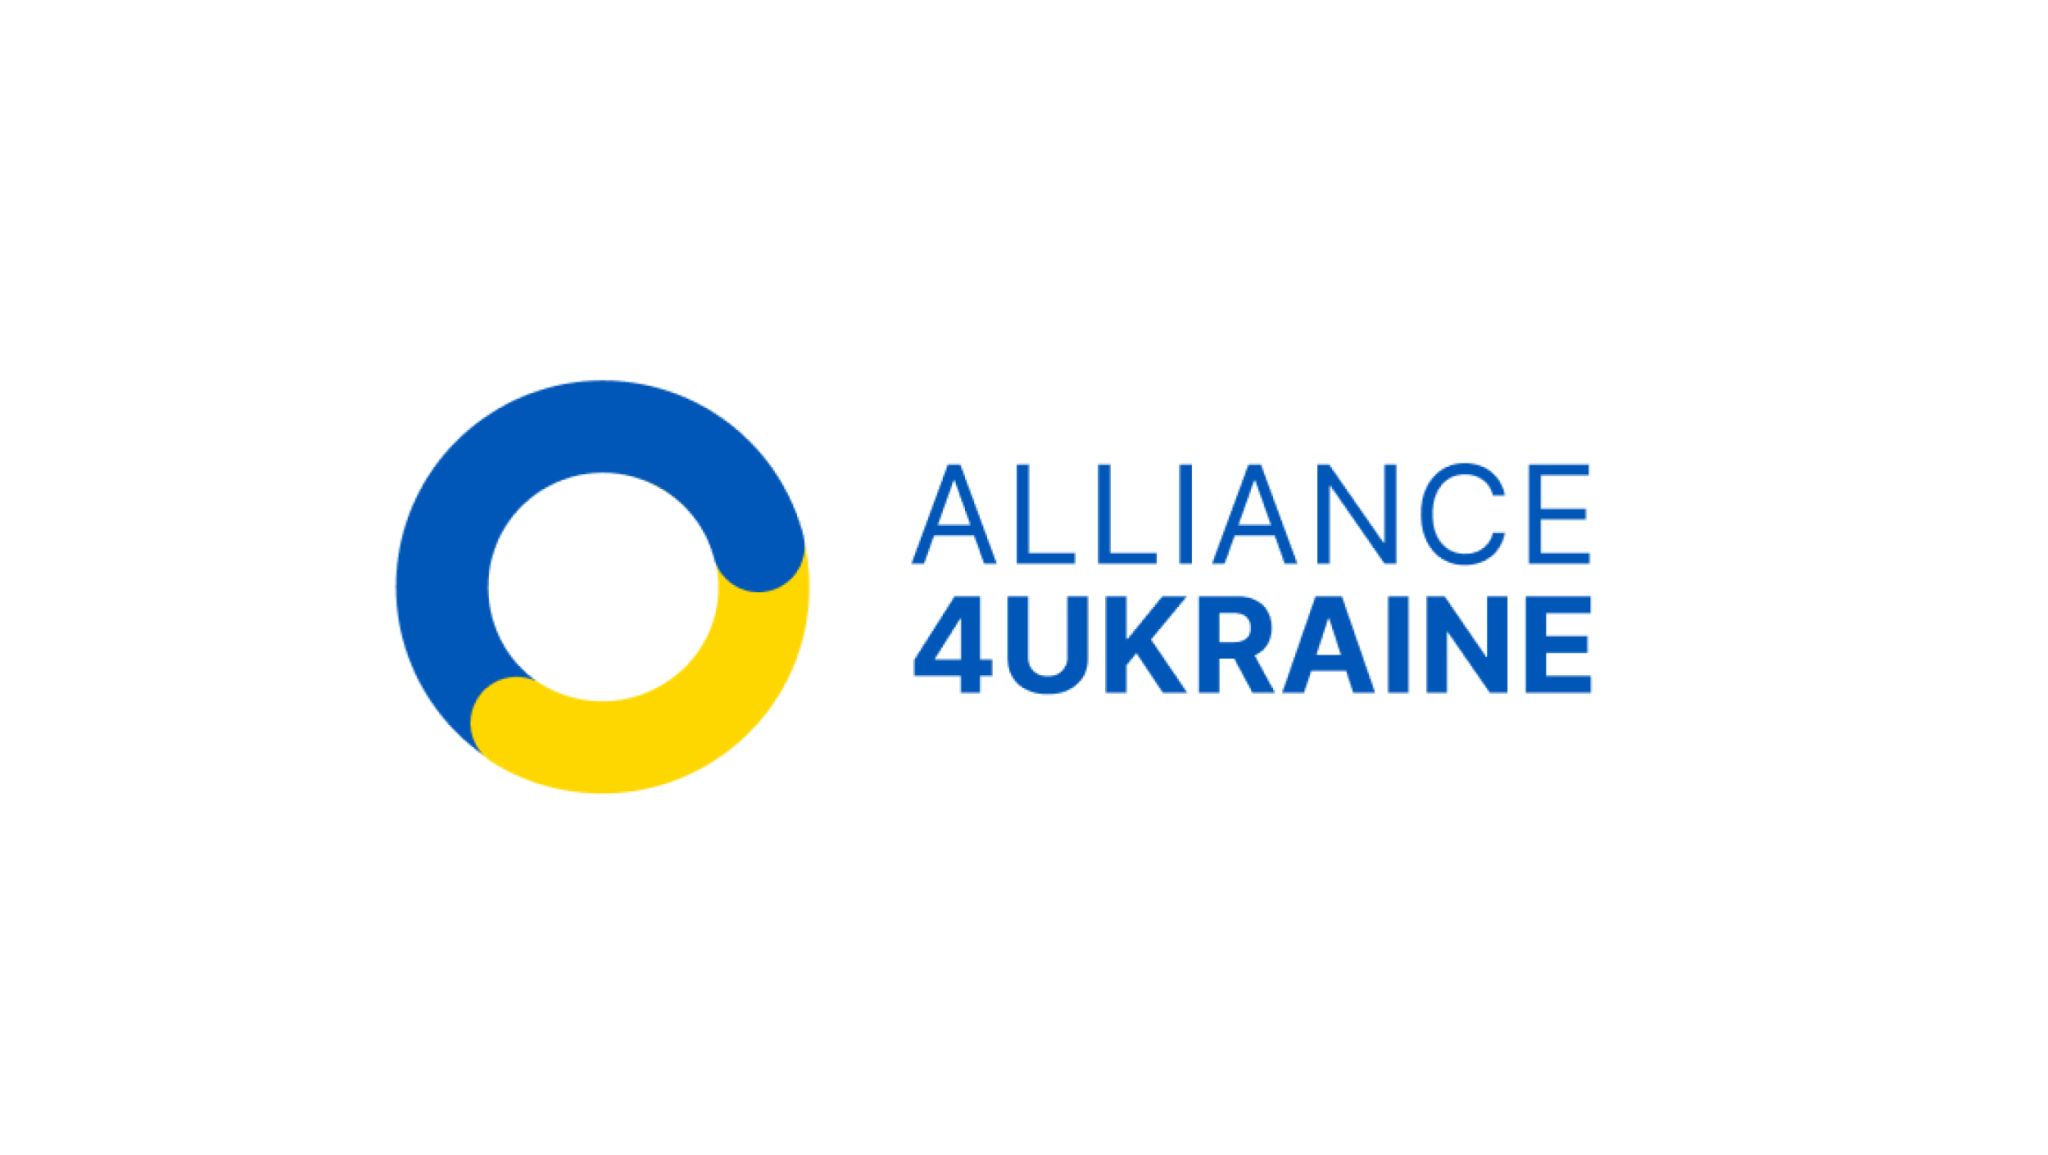 #Alliance4Ukraine